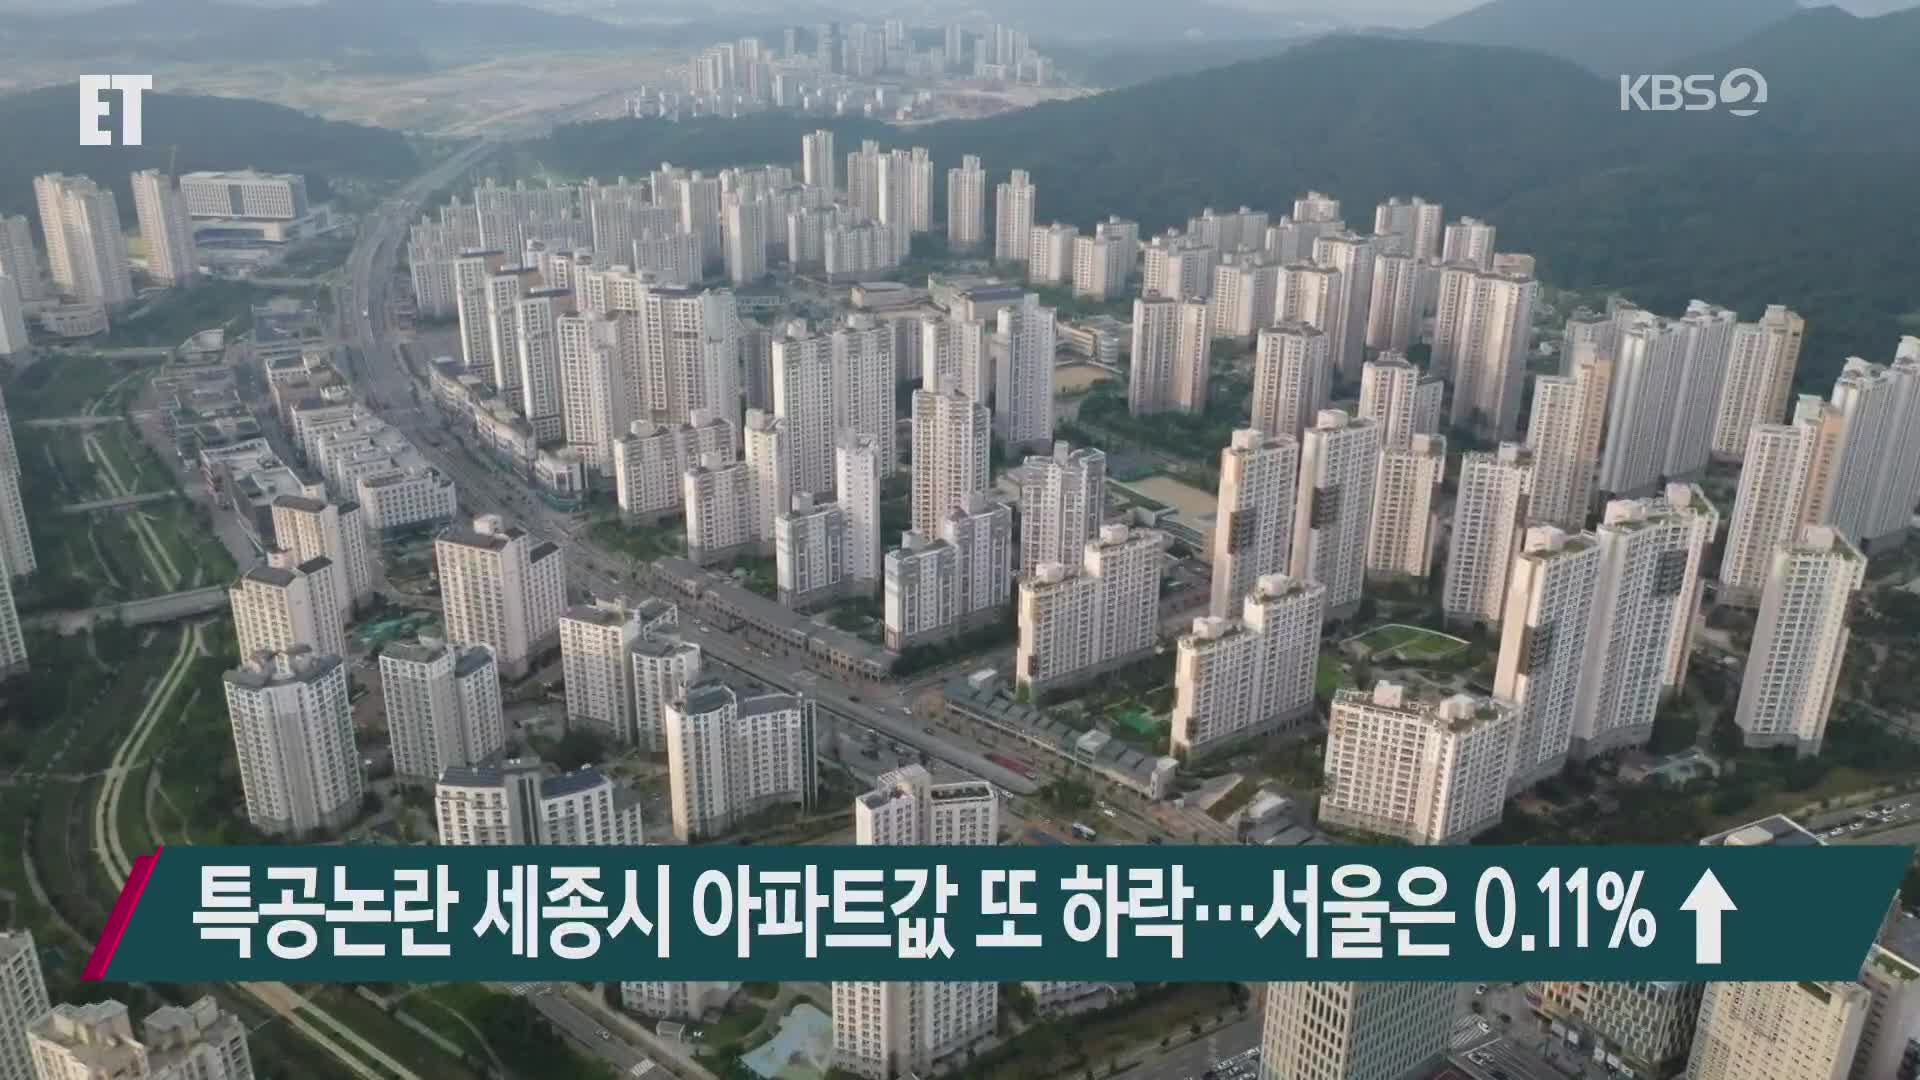 특공논란 세종시 아파트값 또 하락…서울은 0.11%↑